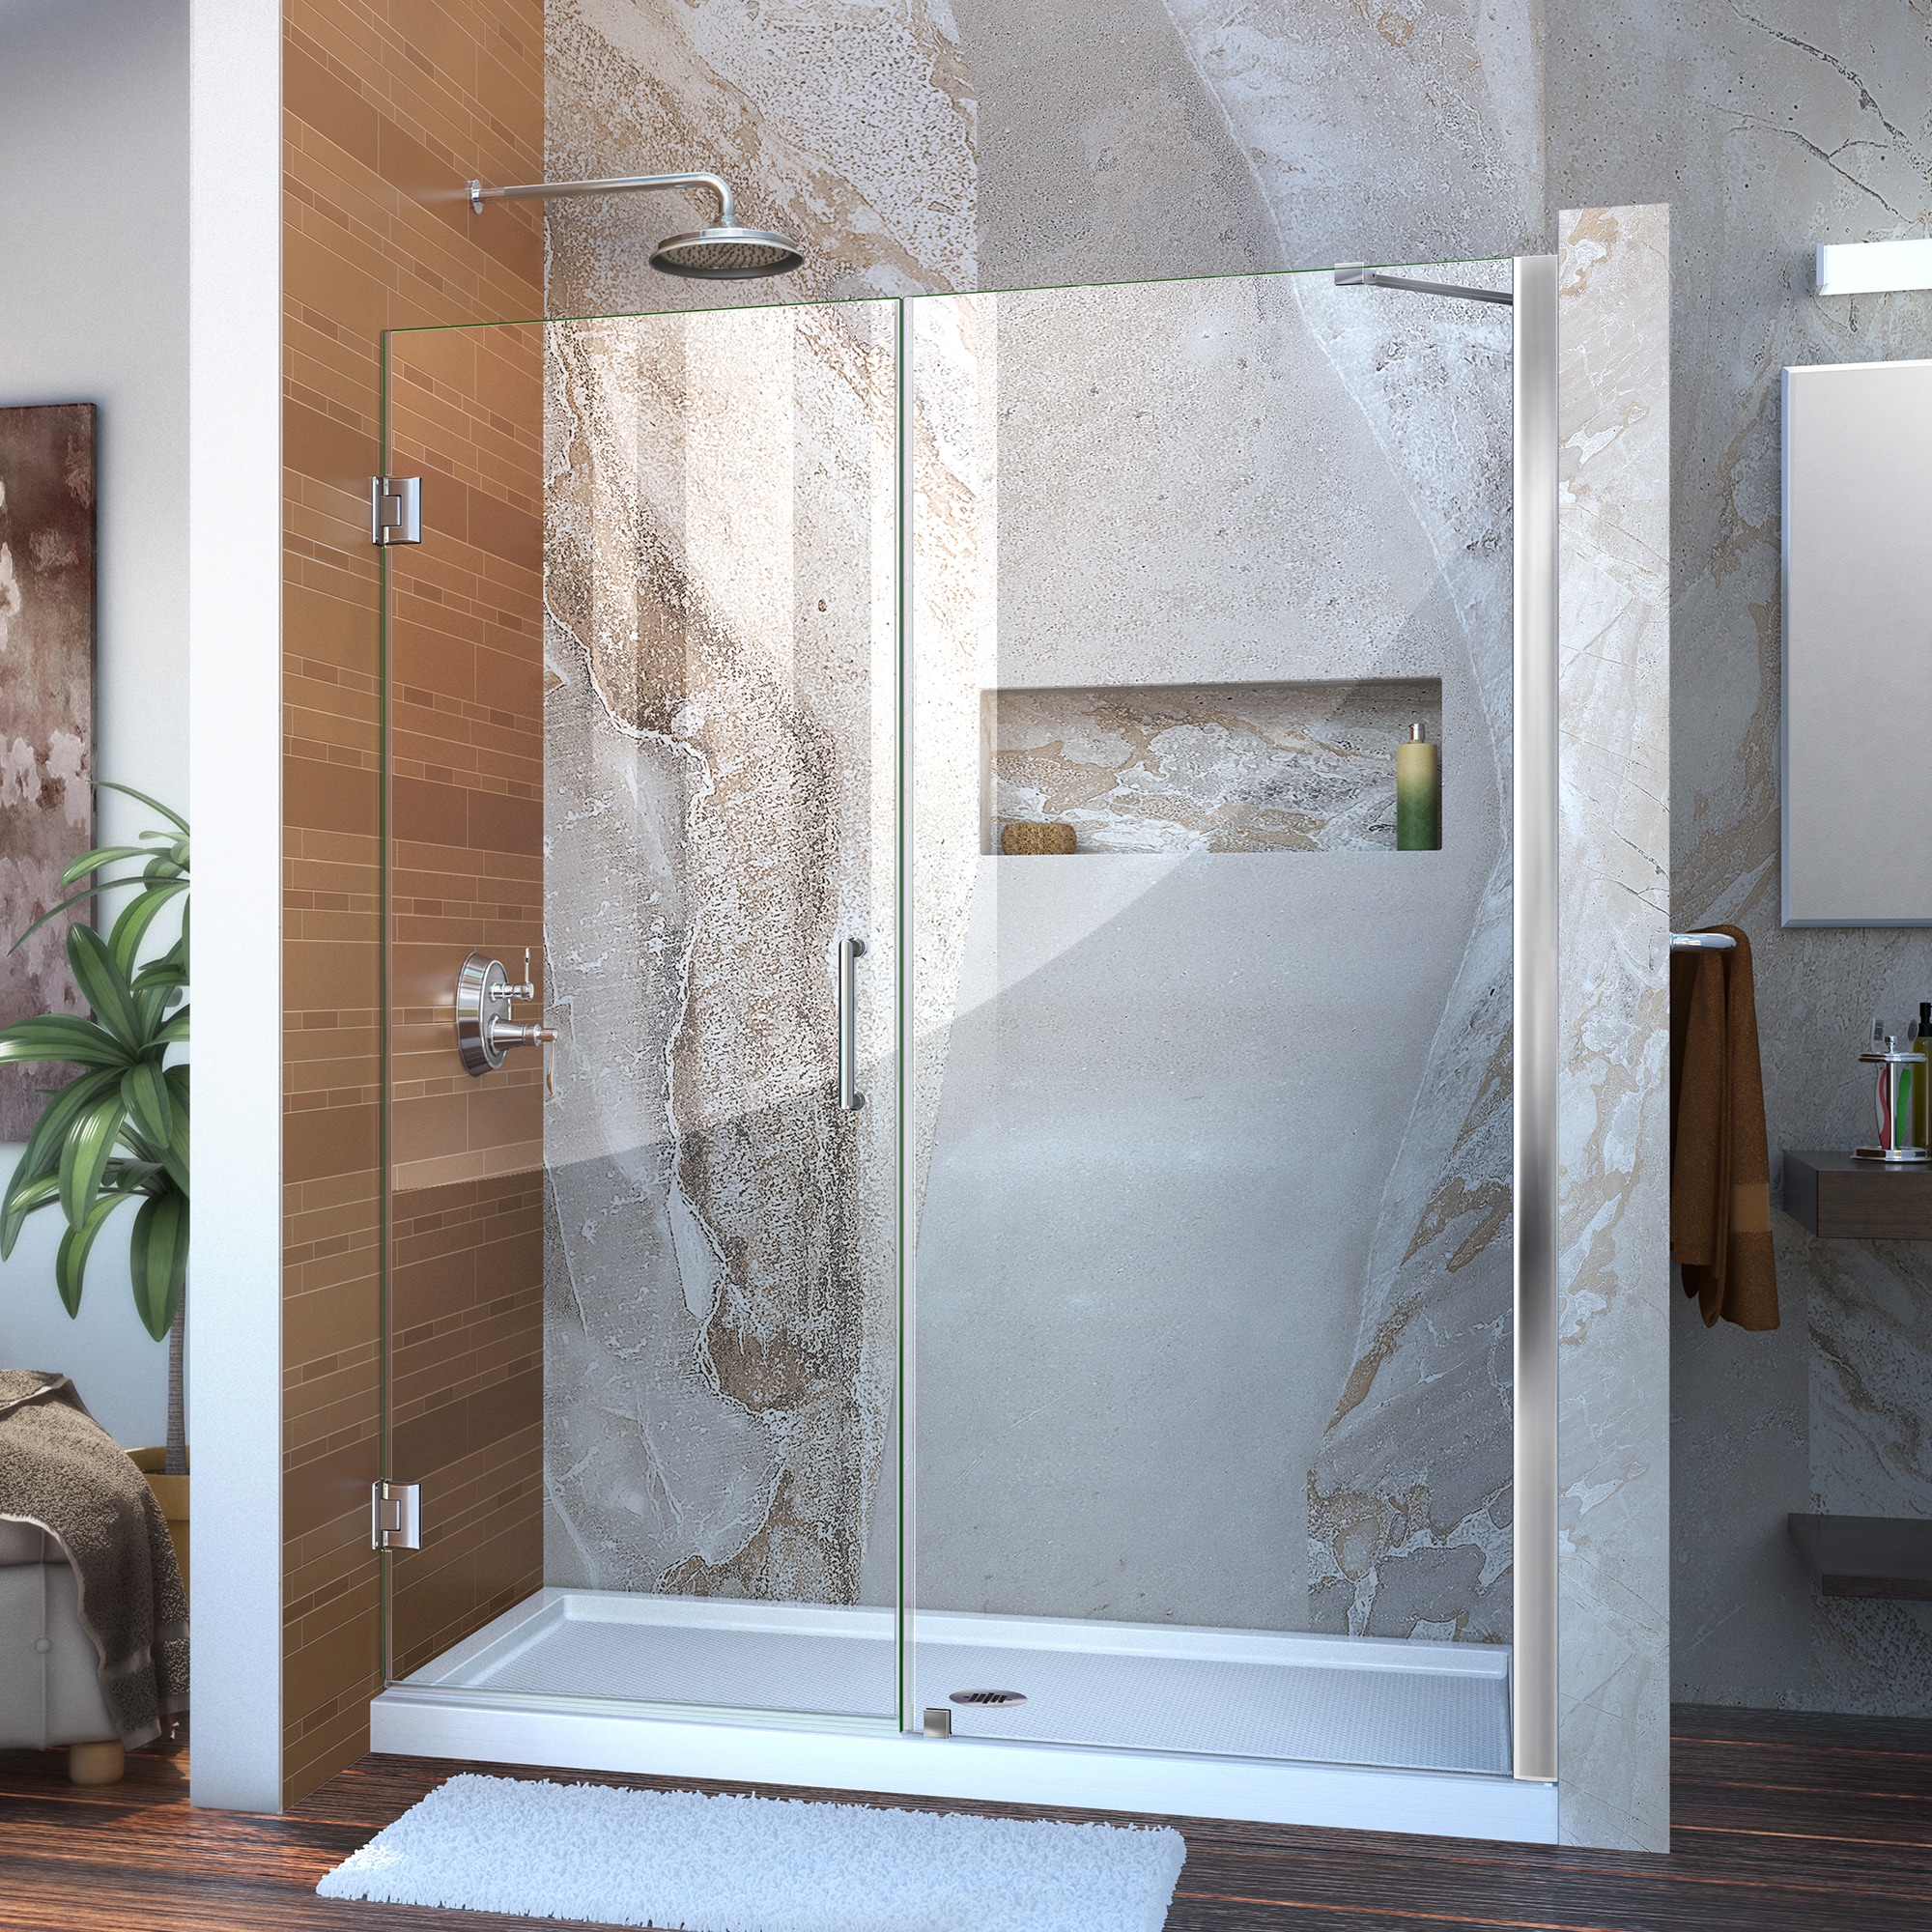 SUNNY SHOWER 34 in. X 34 in. X 72 in. Corner Shower Enclosure 1/4 in. Clear  Glass Semi-Frameless Sliding Shower Doors Chrome Finish Corner Shower